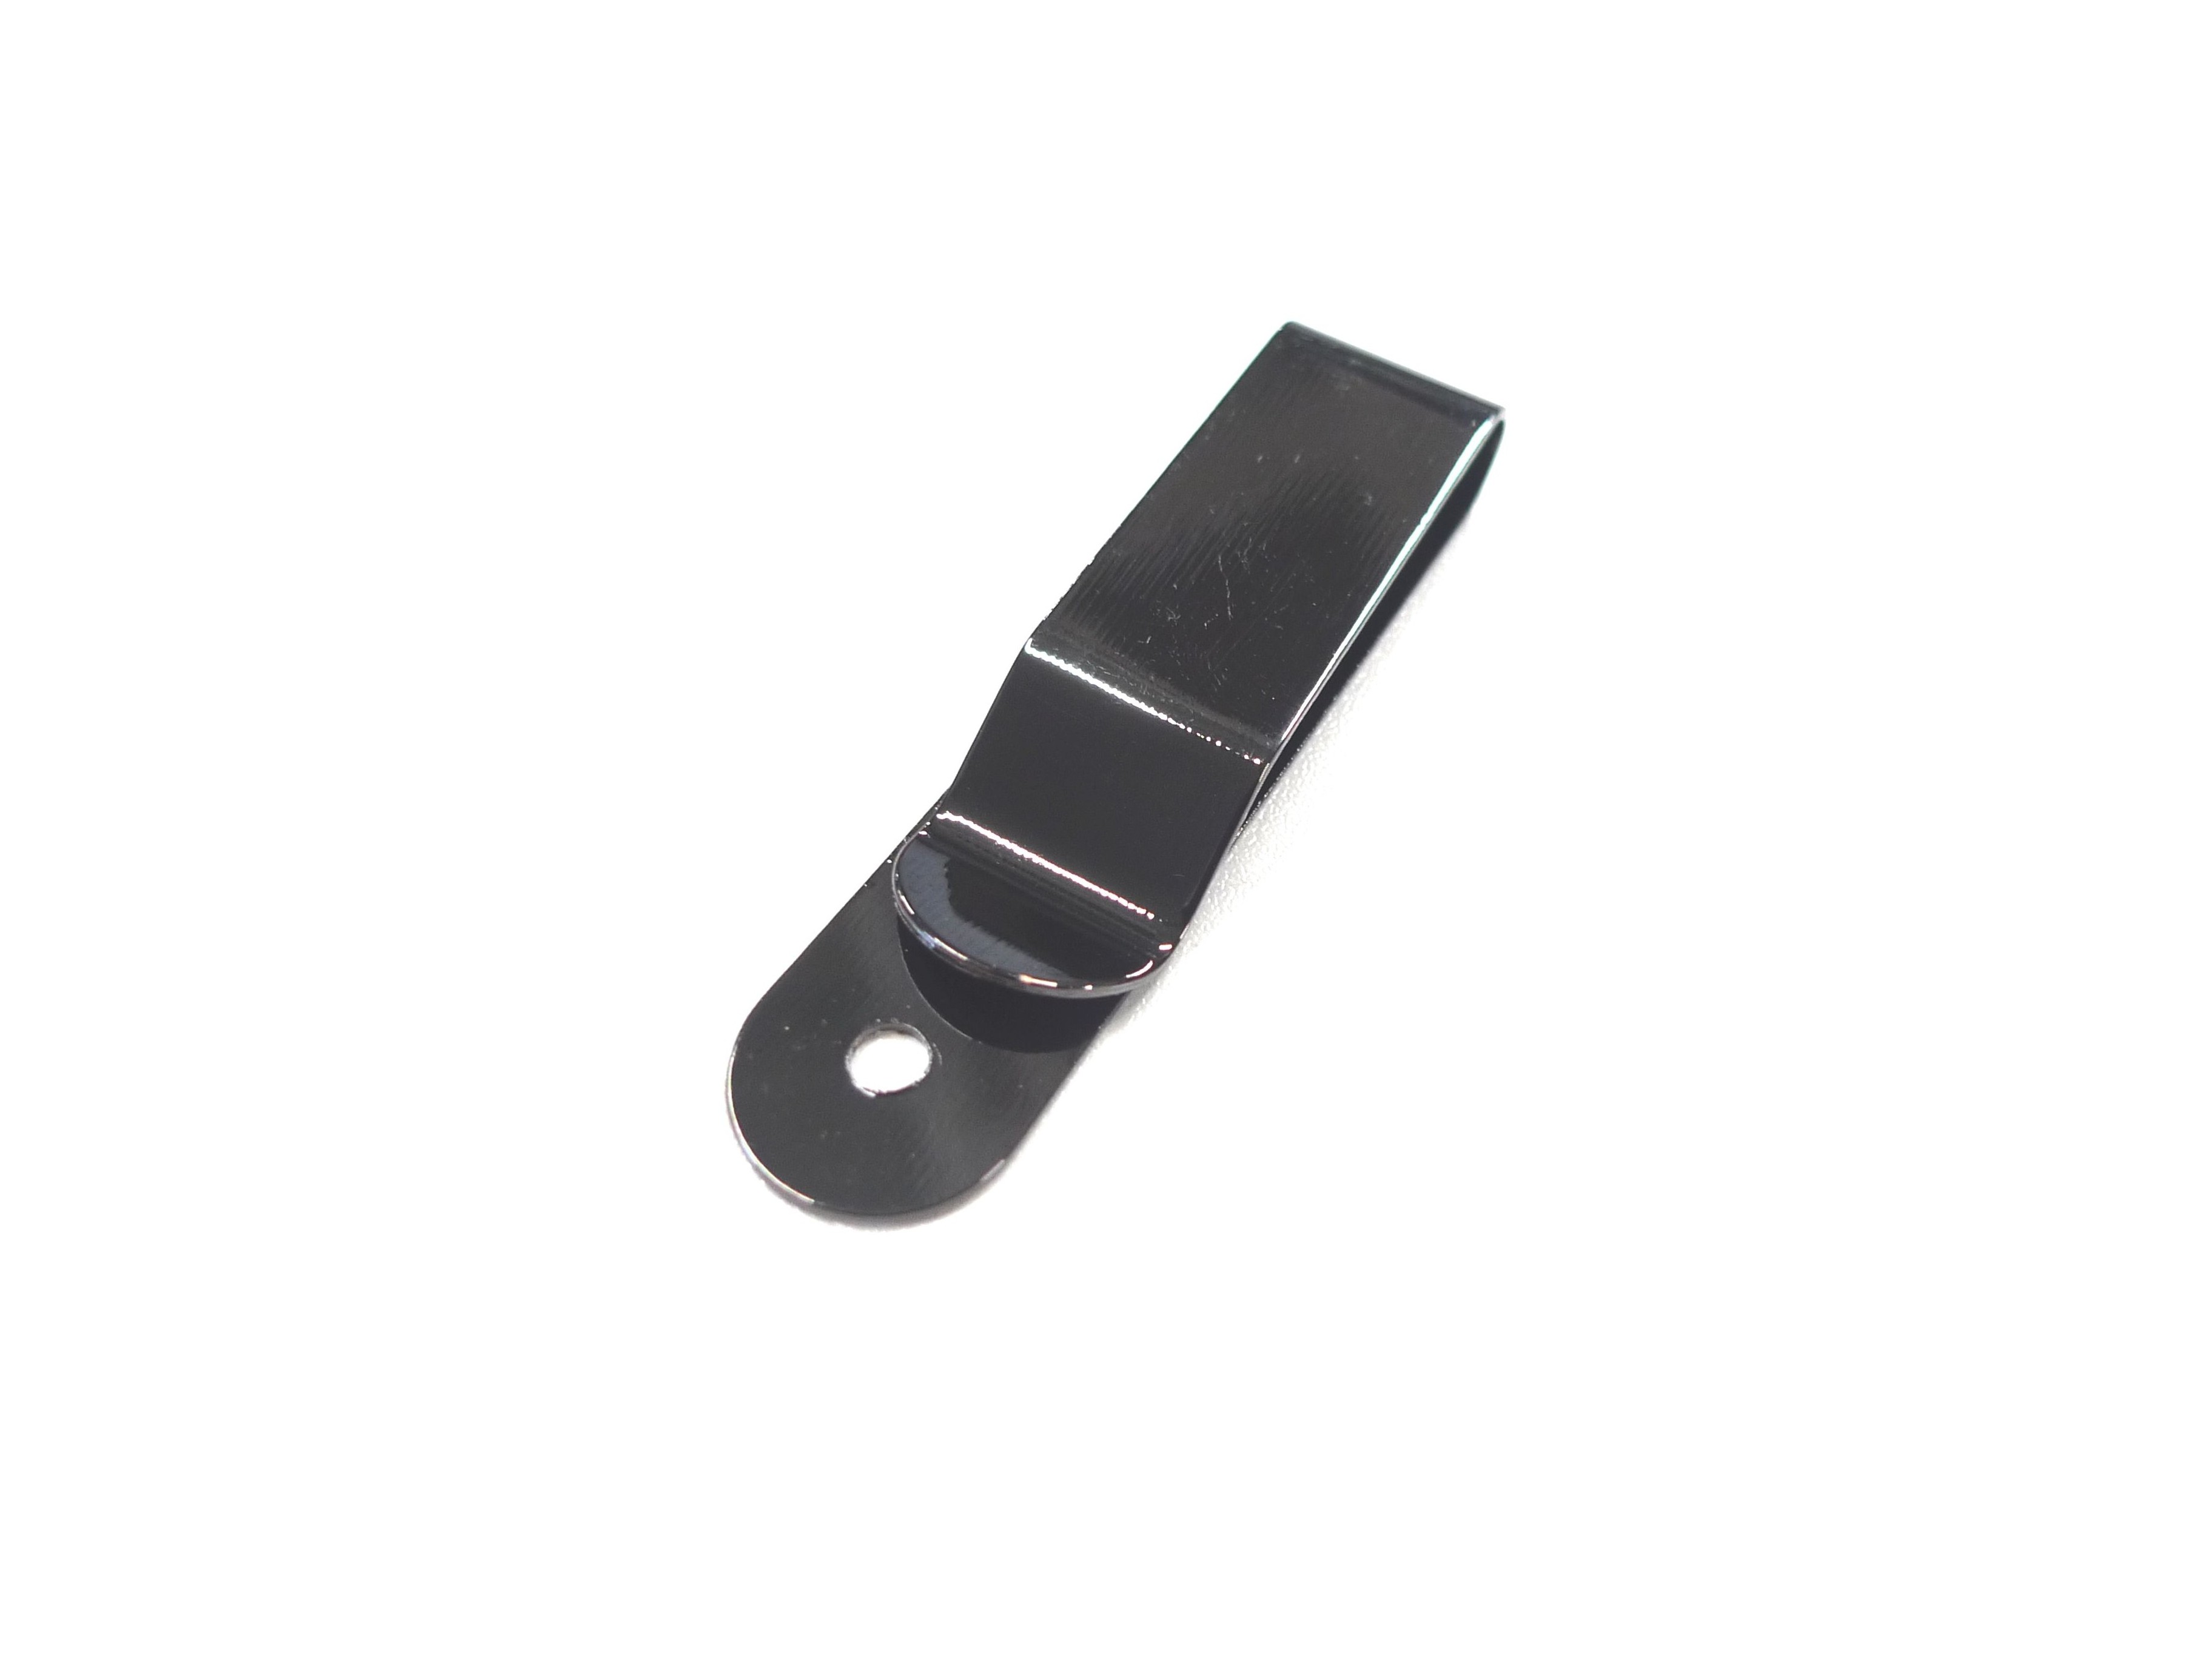 Clip ceinture pour Bluetens classic - accessoire pratique